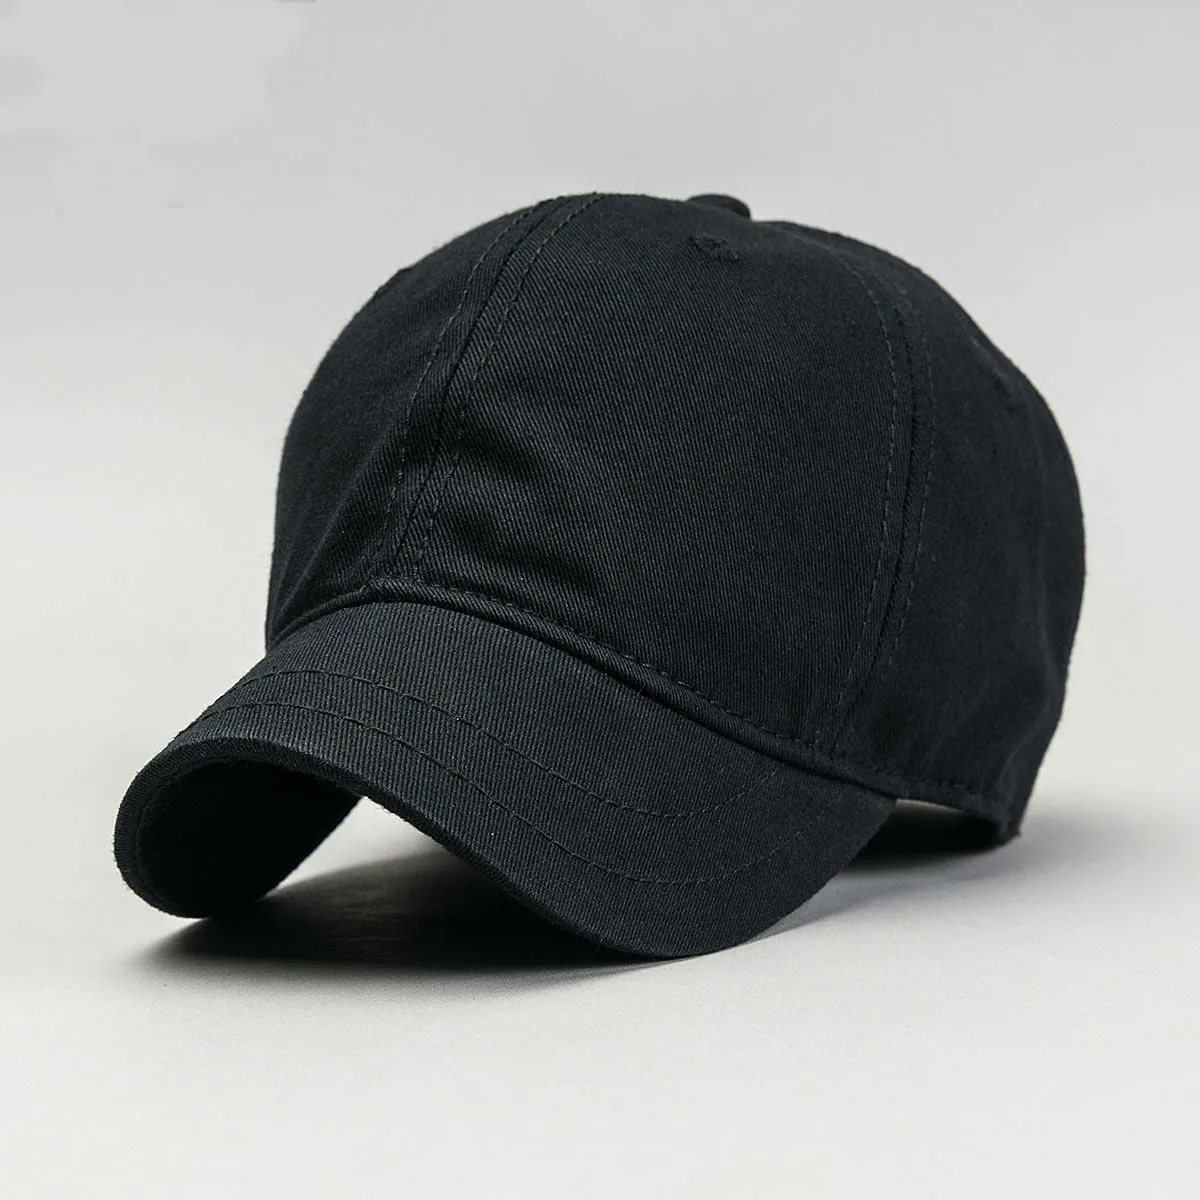 Beckyruiwu أعلى جودة كبيرة رئيس رجل قبعة الذكور القطن الخالص الصلبة لون قبعات الشمس الرجال زائد حجم قبعة بيسبول 56-61 سنتيمتر